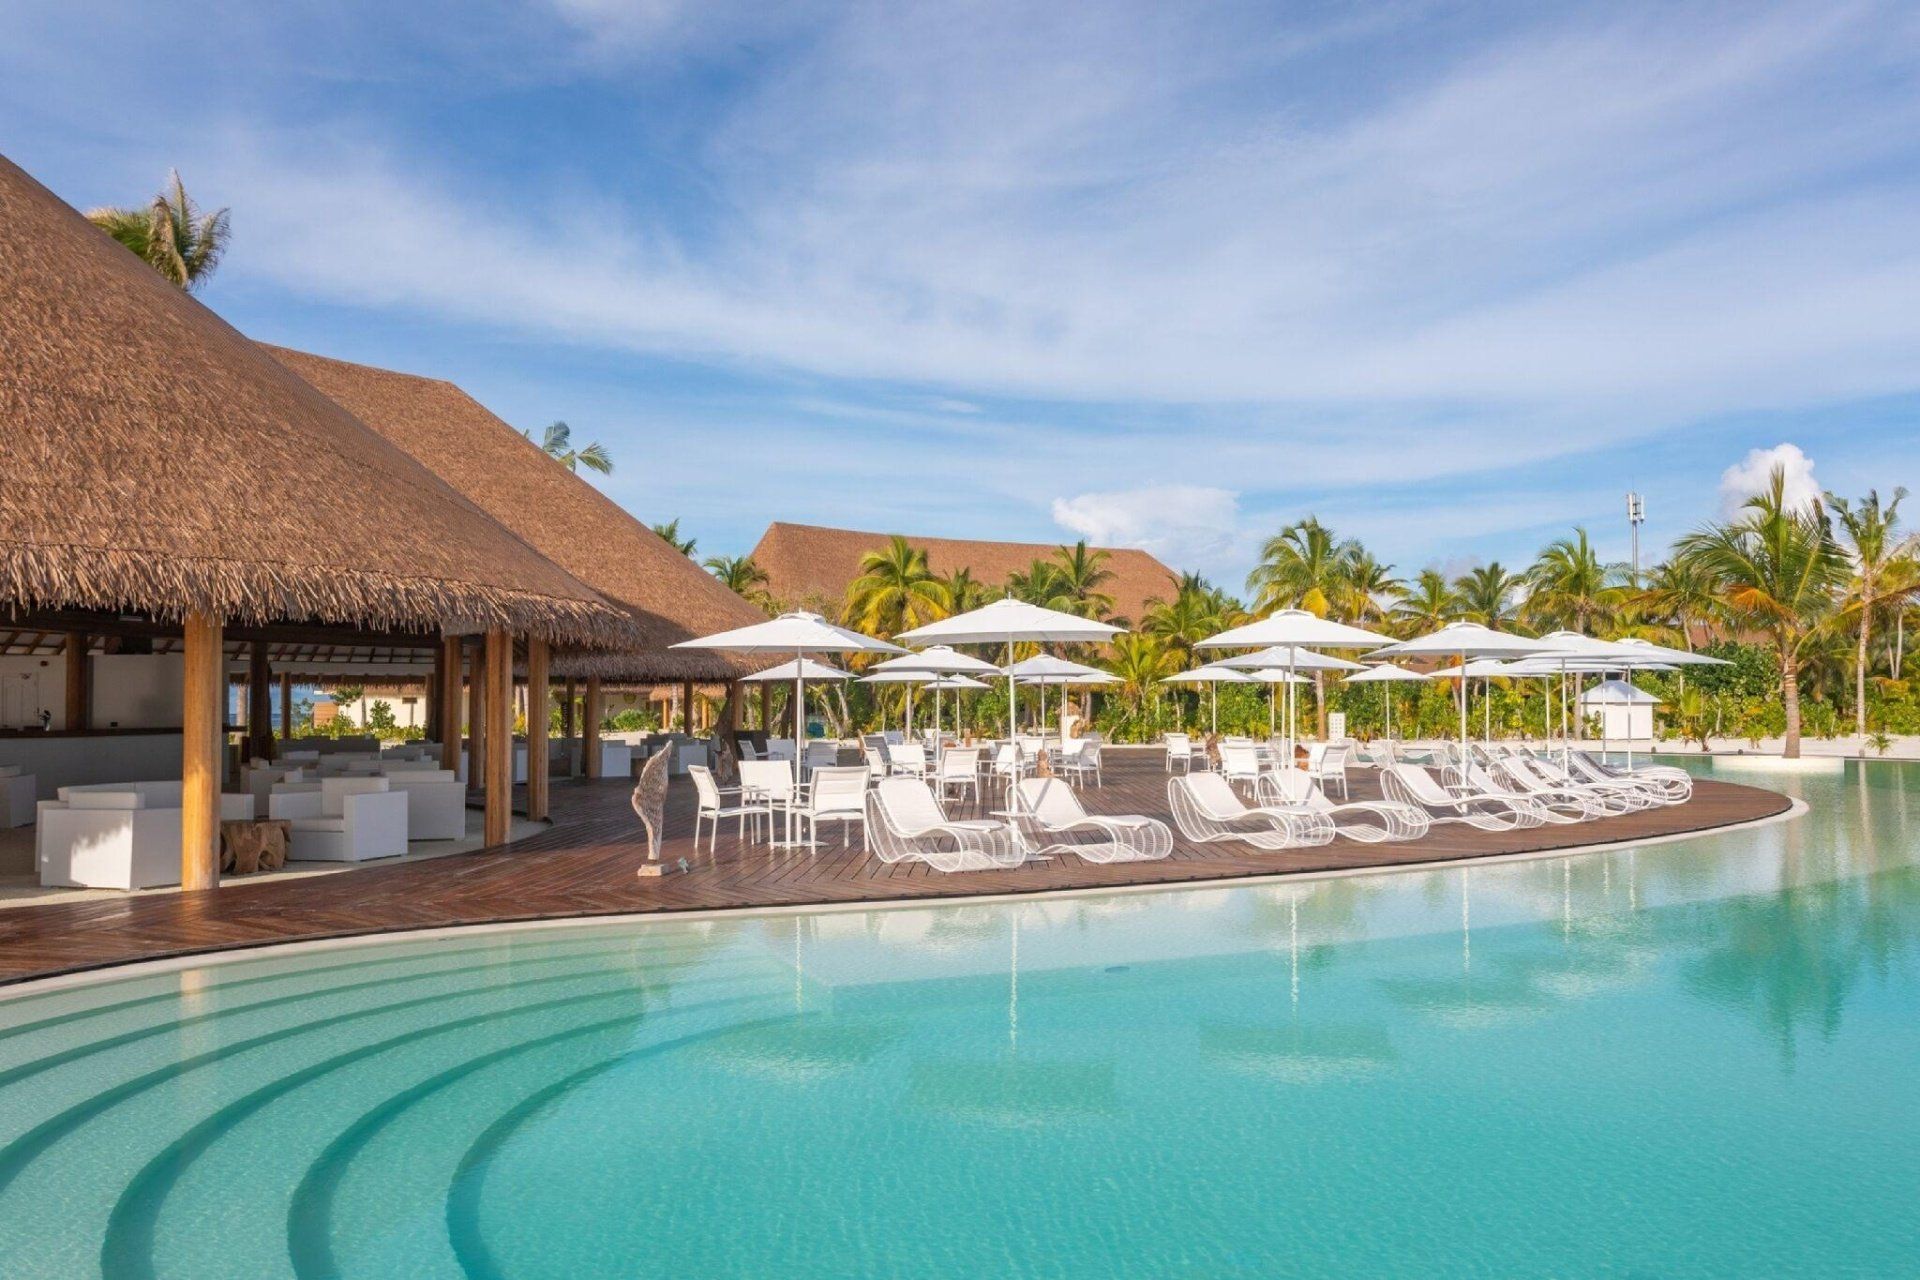 Resort pool view